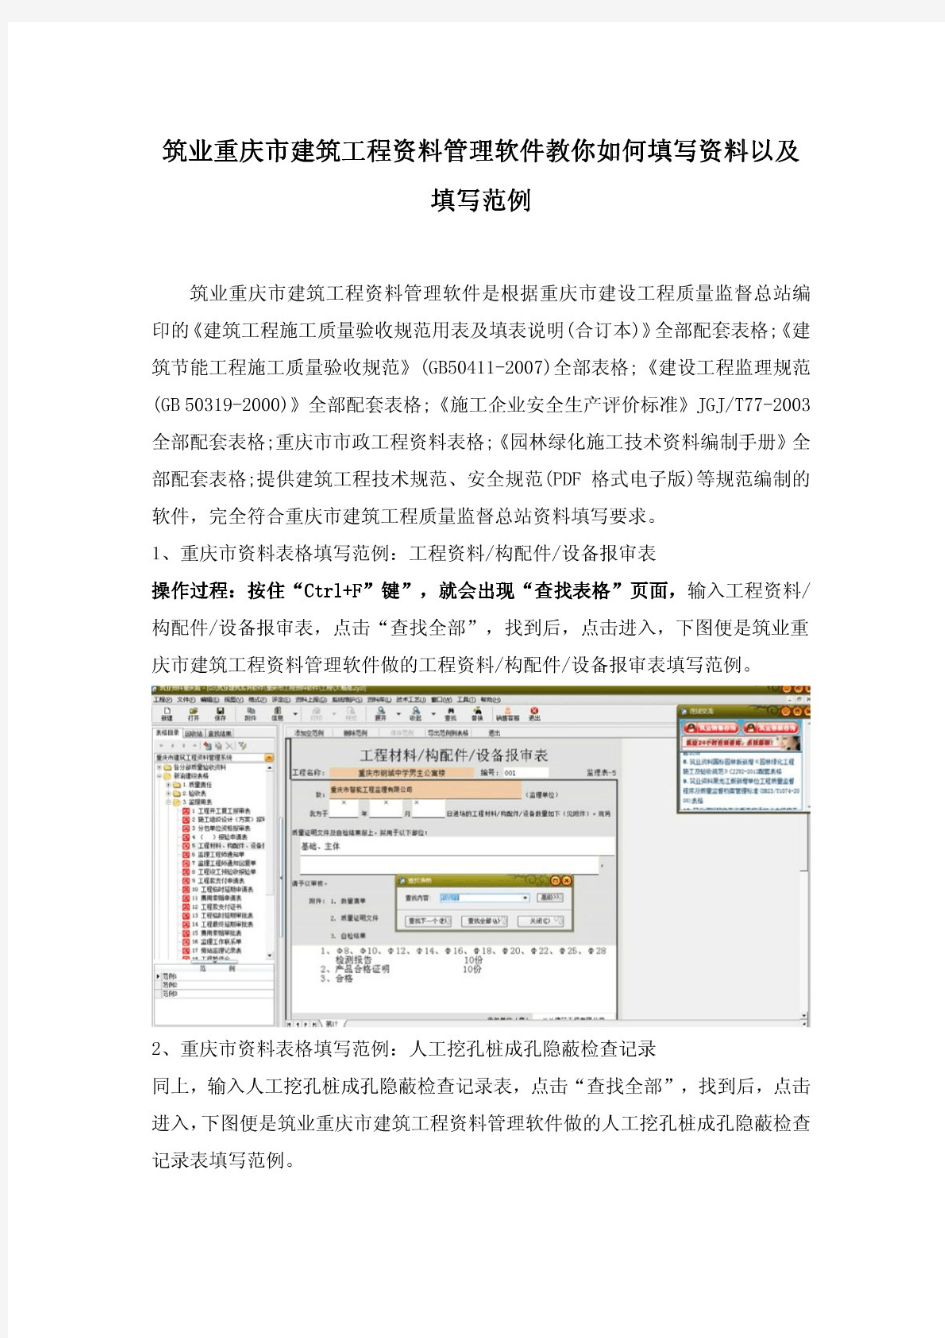 筑业重庆市建筑工程资料管理软件教你如何填写资料以及填写范例